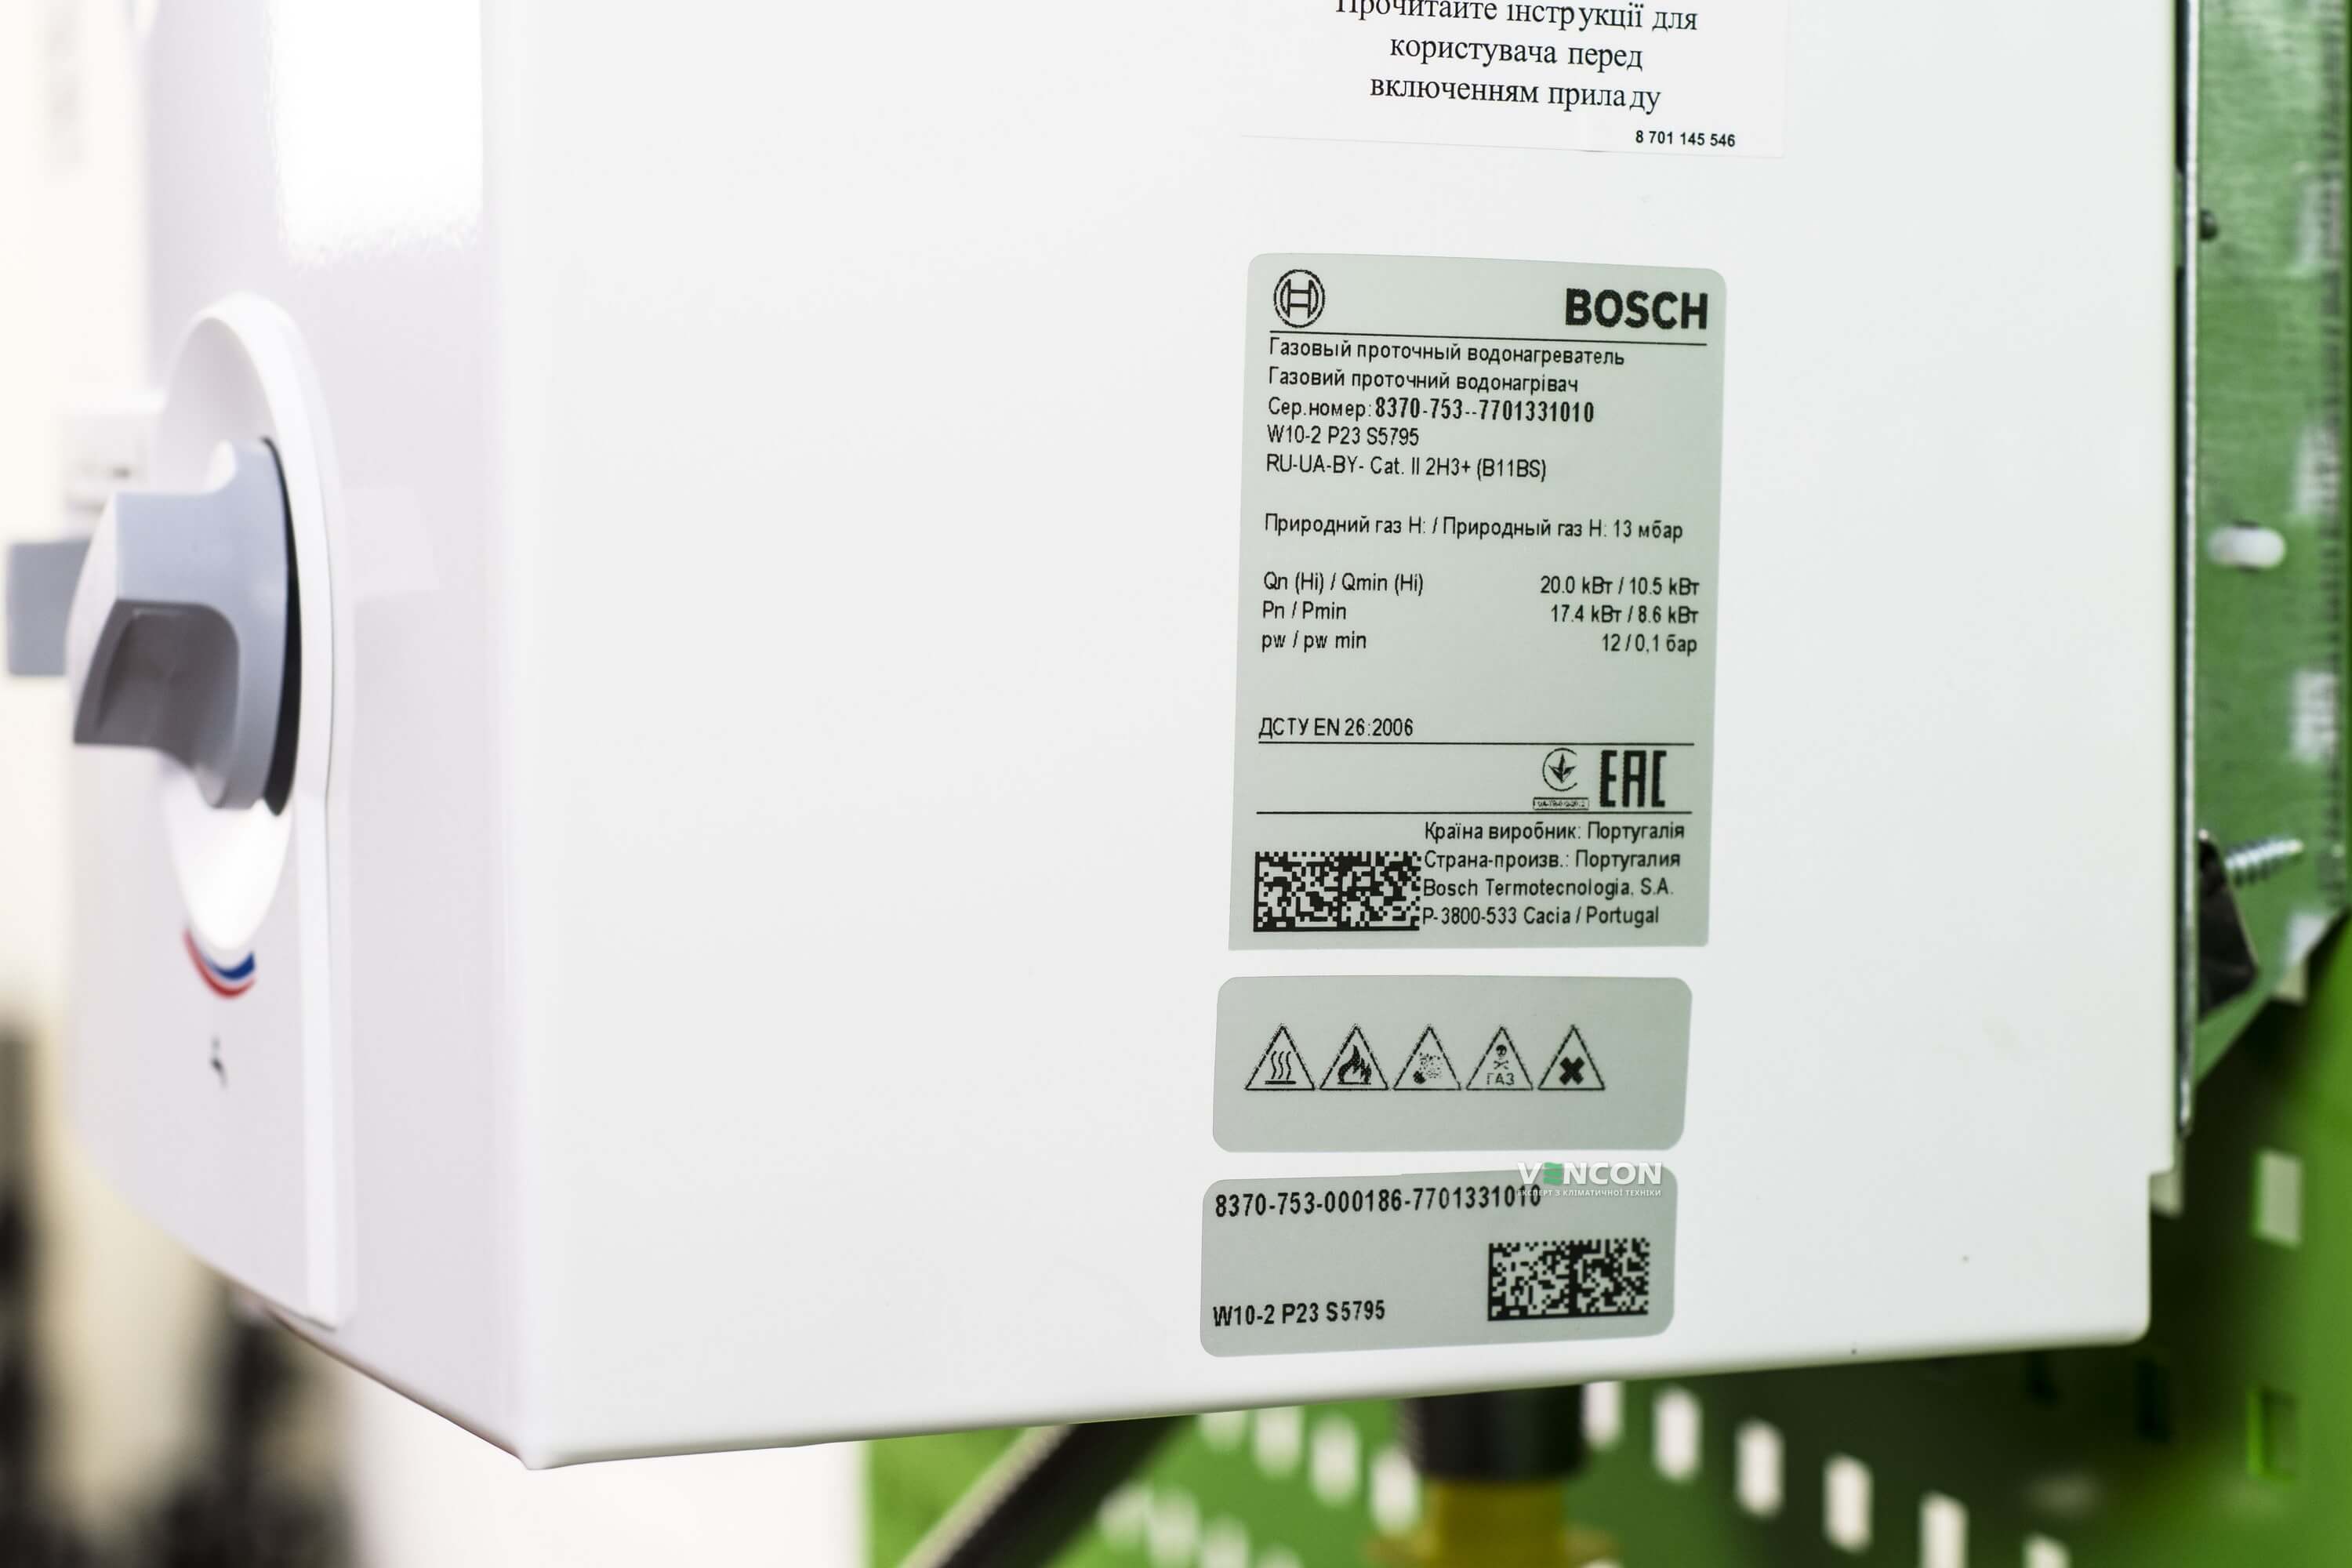 Газова колонка Bosch Therm 4000 O W 10-2 P (7701331010) характеристики - фотографія 7